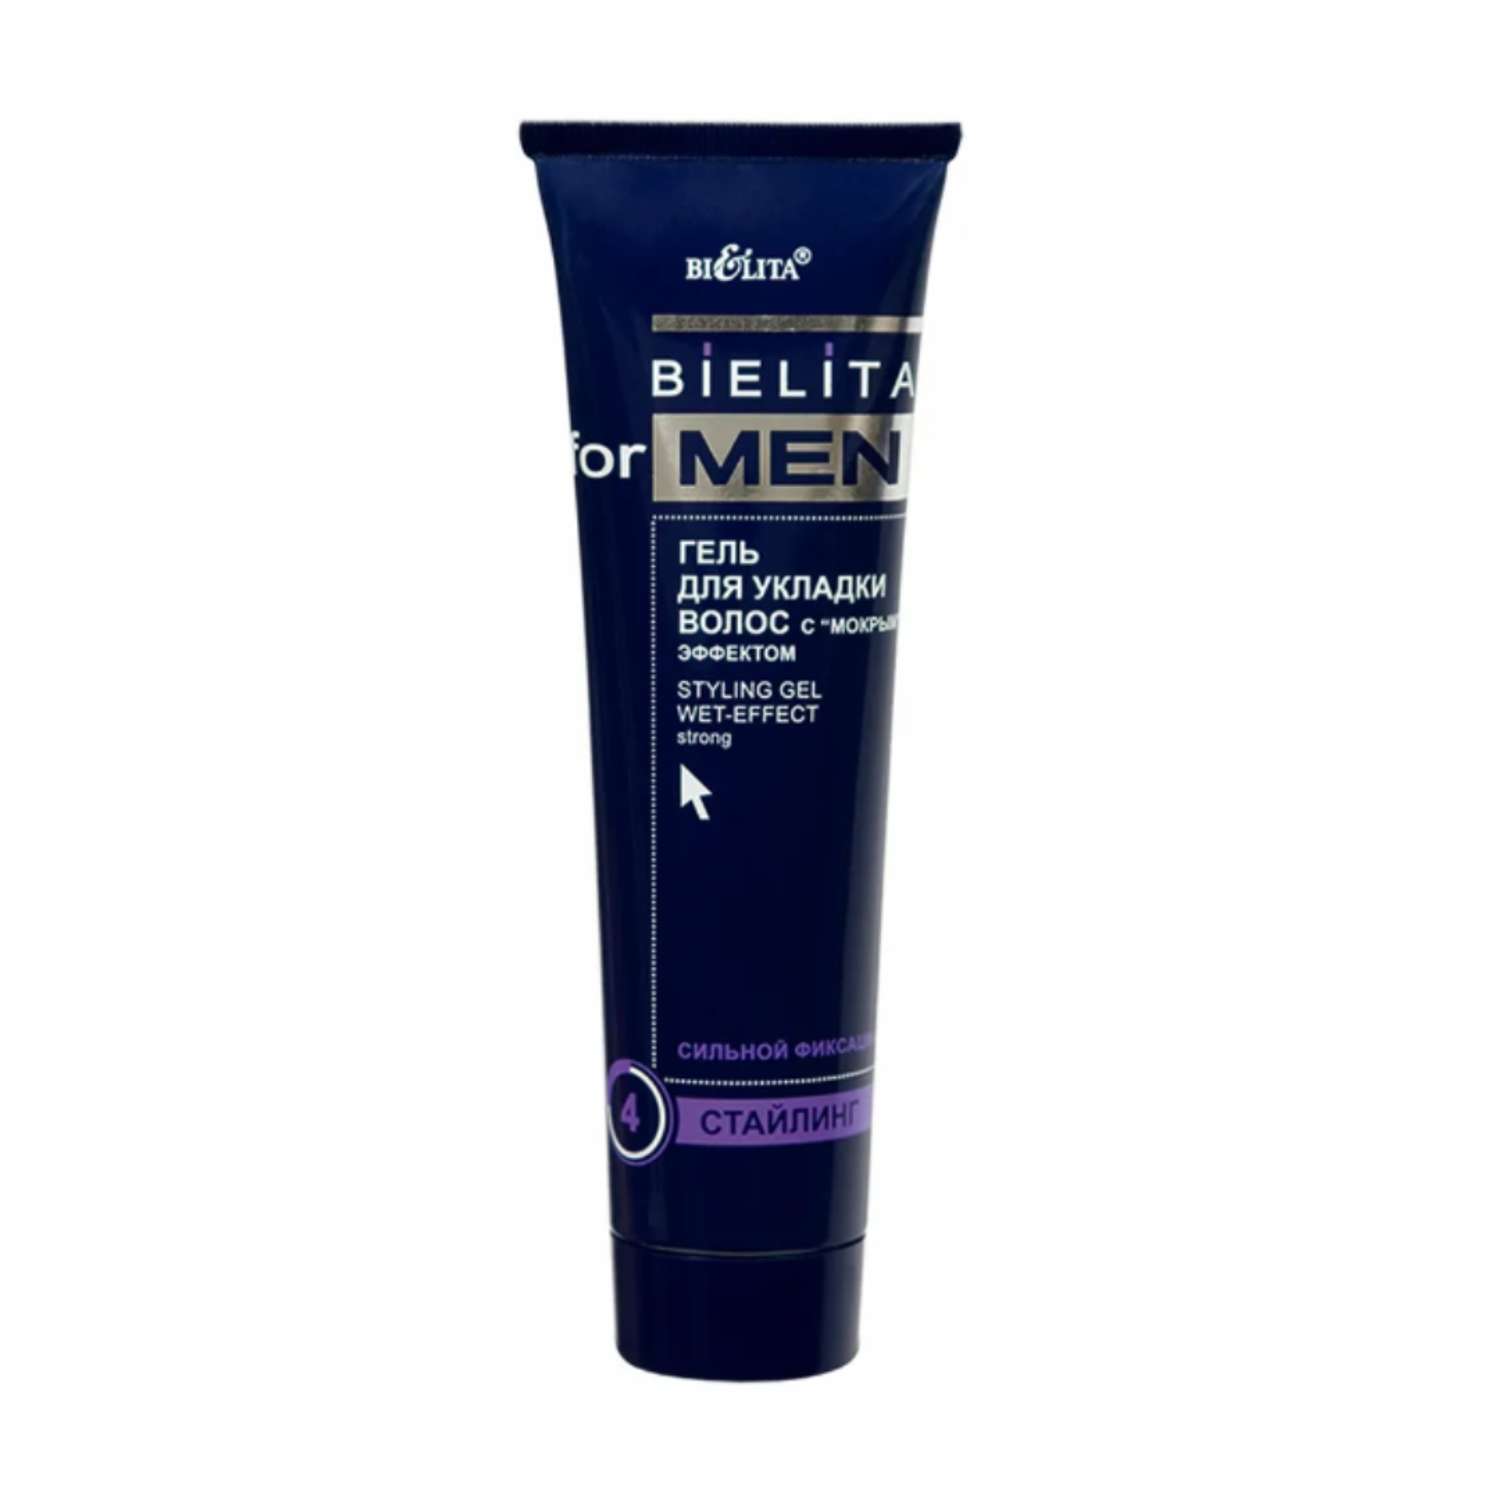 Гель для укладки волос БЕЛИТА bielita for men с мокрым эффектом сильной фиксации 100 мл - фото 1